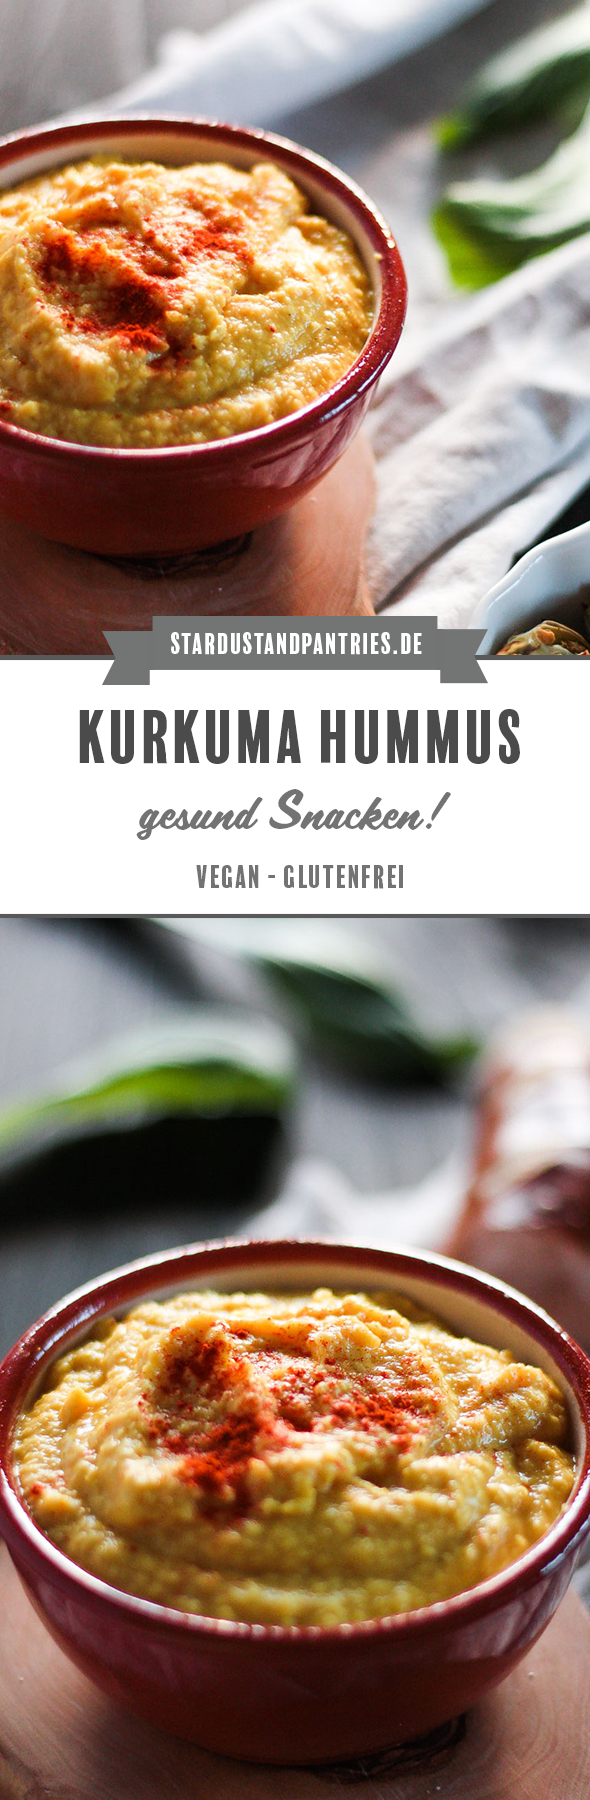 Schnelles Kurkuma Hummus als Dip zu Gemüse und als Brotaufstrich. Kurkuma Hummus ist von Natur aus glutenfrei und vegan. Ein gesunder Snack für den Hunger Zwischendurch oder für's Büro! #Snack #Hummus #Kurkuma #Gesund